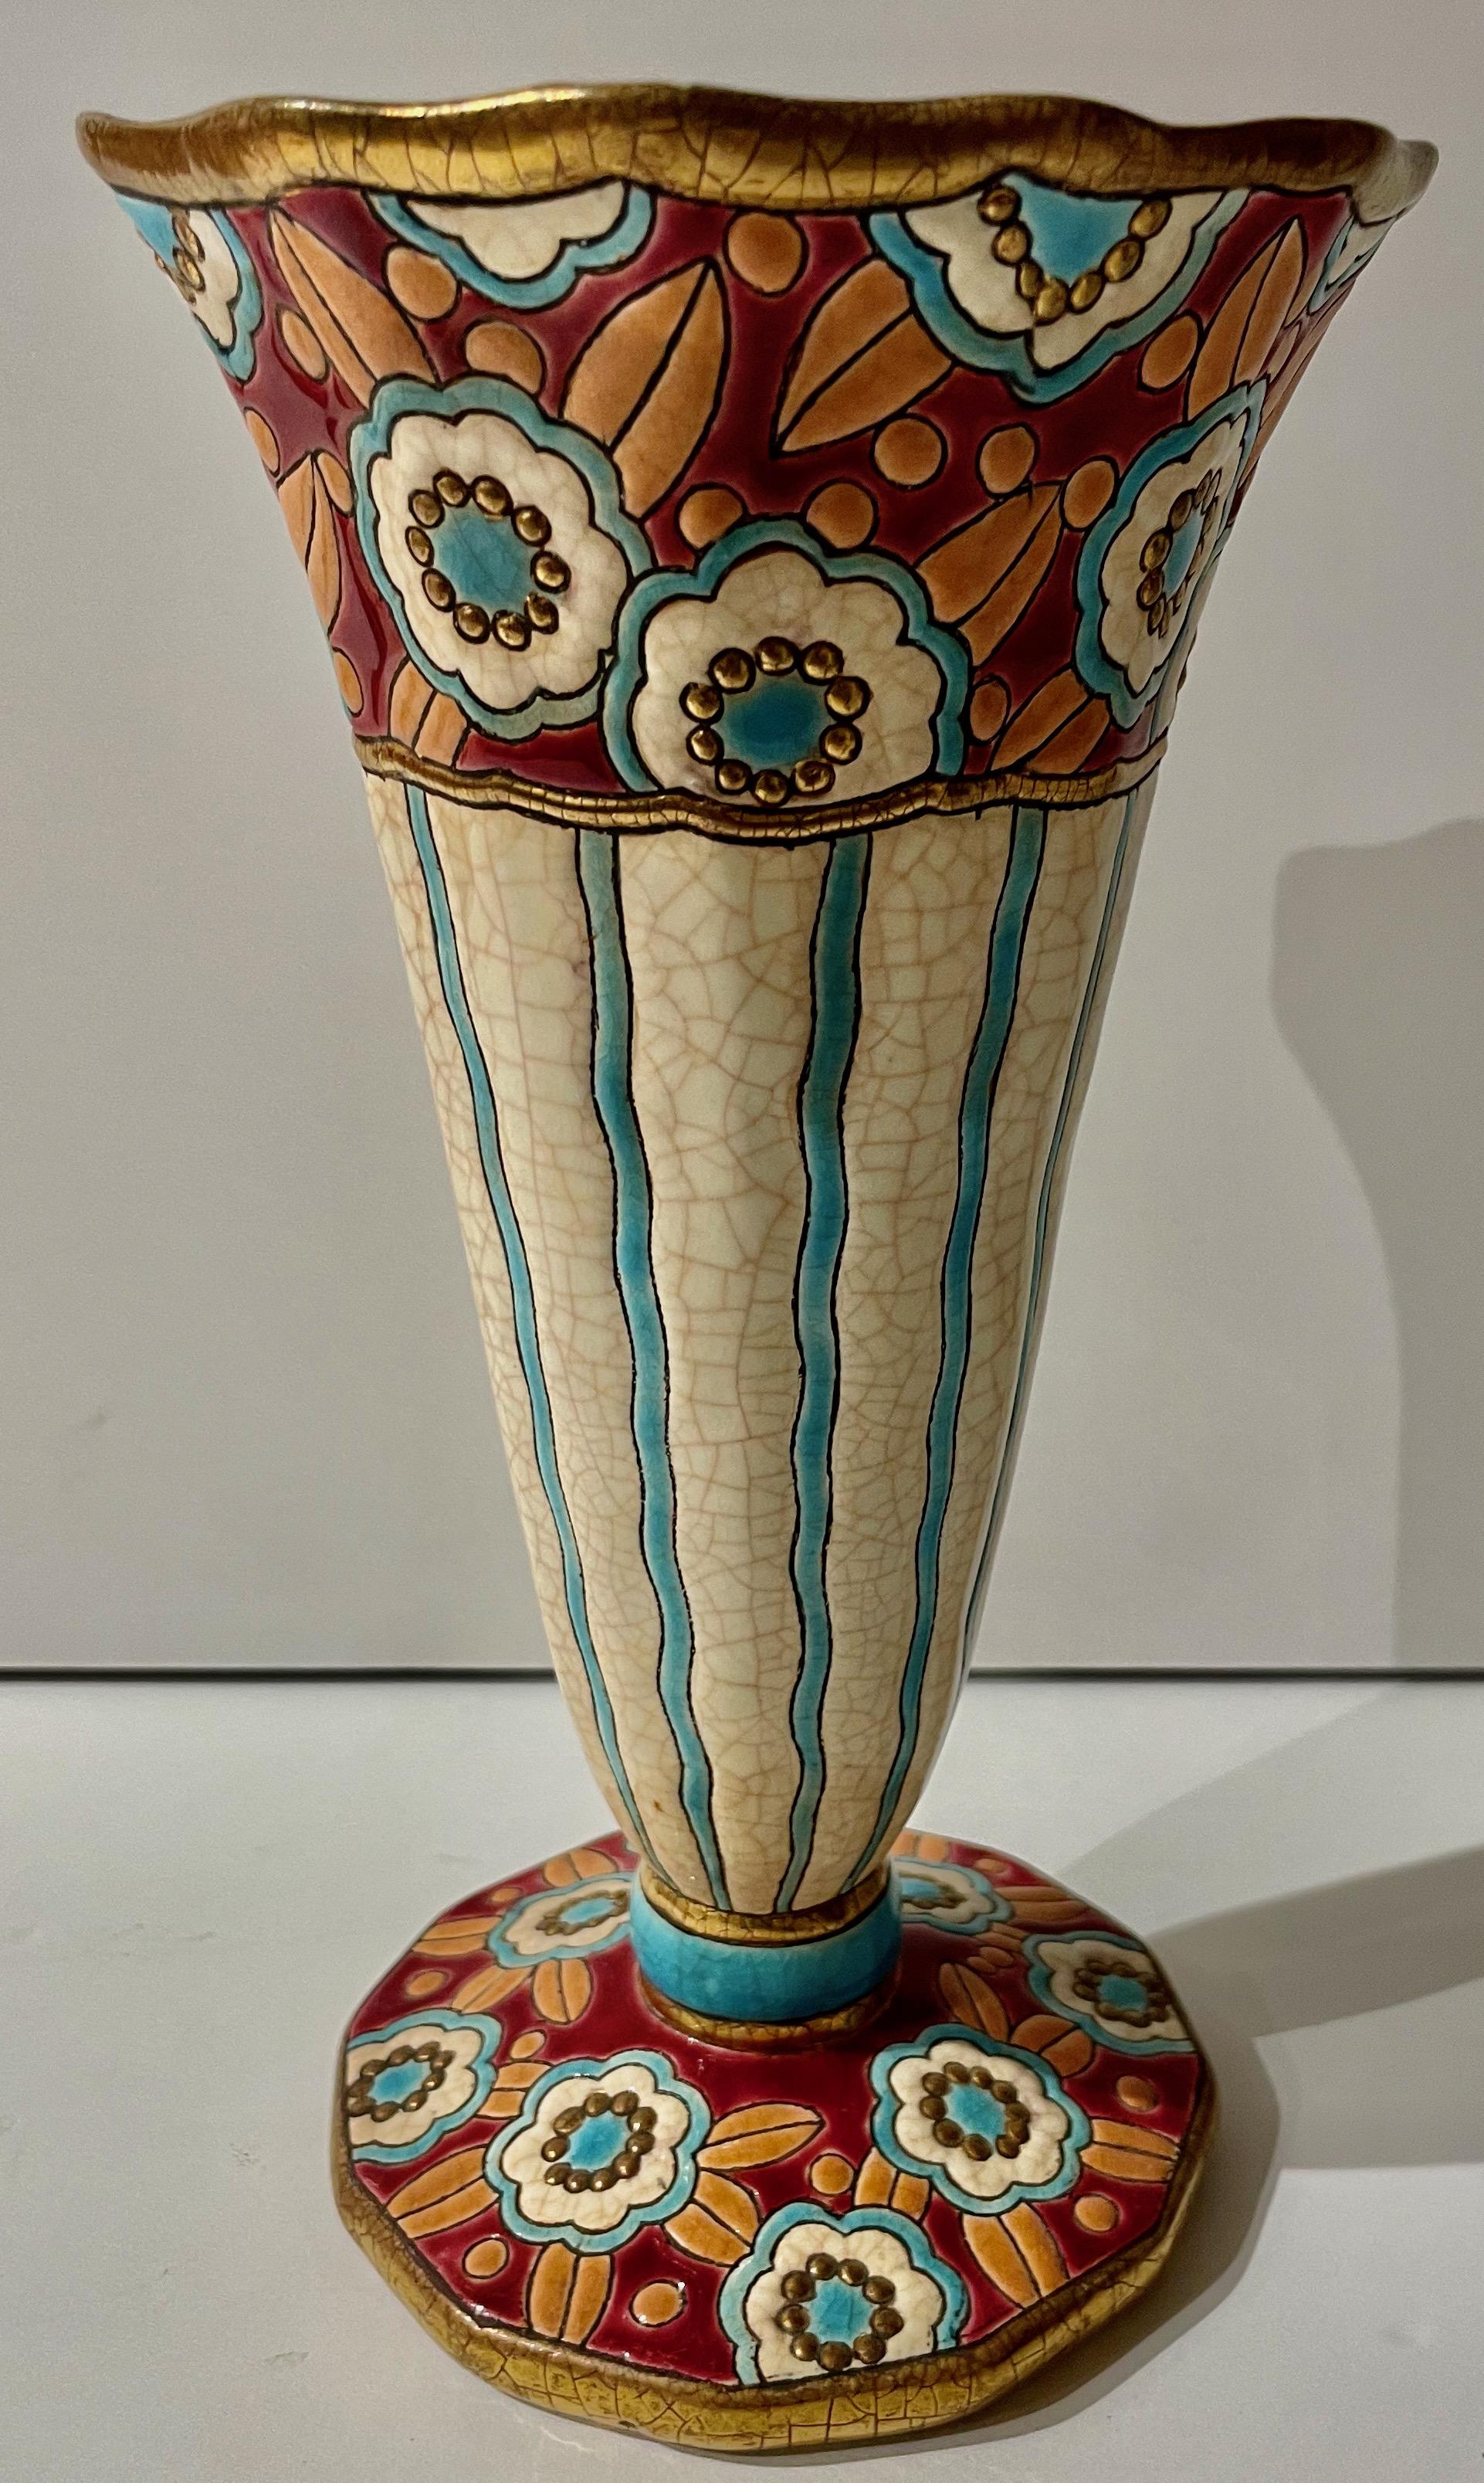 Longwy Art Deco Französisch Cloisonné Keramik-Vase. Atemberaubende Farben mit facettiertem Boden mit blauen, bordeauxfarbenen und orangefarbenen Blumen, die sich im Design der Vase kreuzen. Goldfarbene Details am Sockel und an der Oberseite rahmen